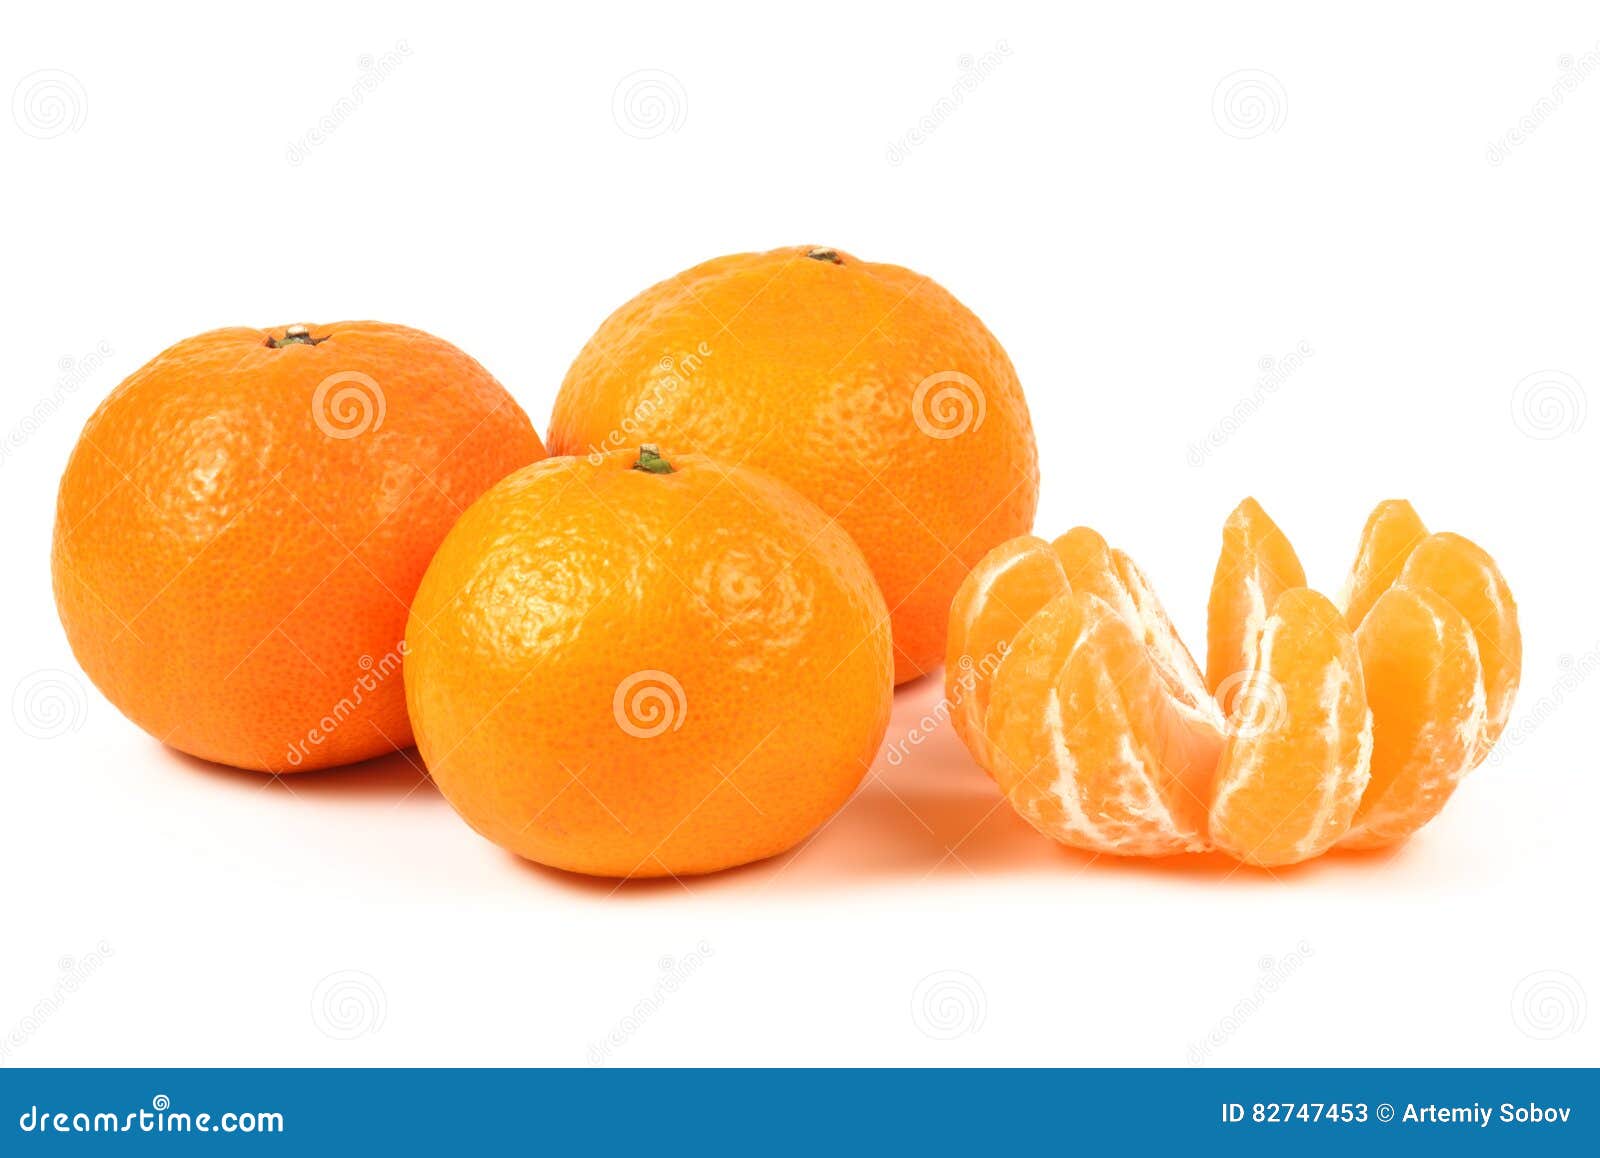 Fresh Tangerine Isolated On A White Background Stock Image Image Of